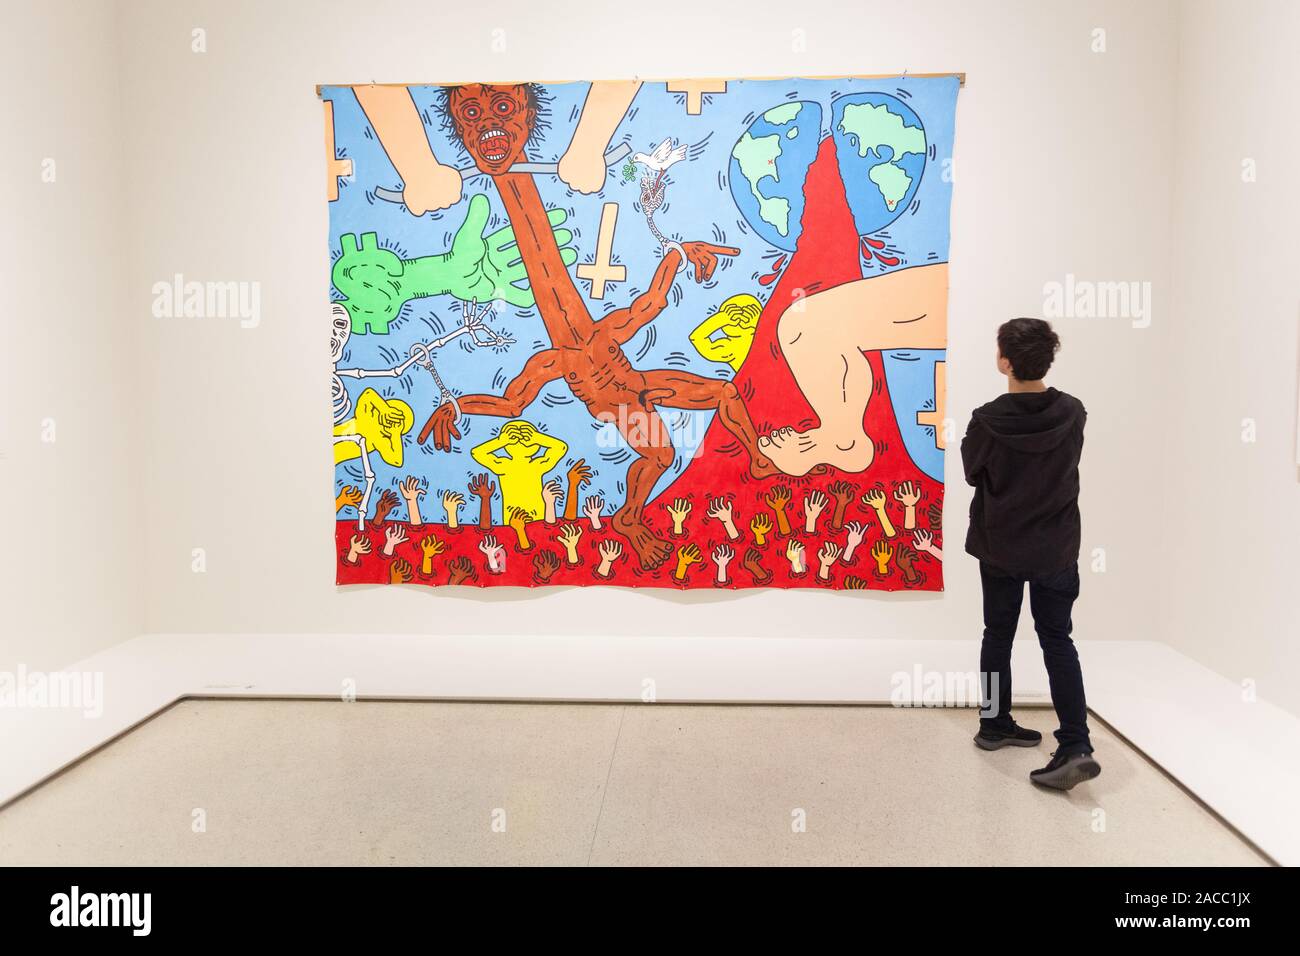 Keith Haring, Michael Stewart - USA für Afrika, Guggenheim Museum, Fifth Avenue, New York City, Vereinigte Staaten von Amerika. Stockfoto